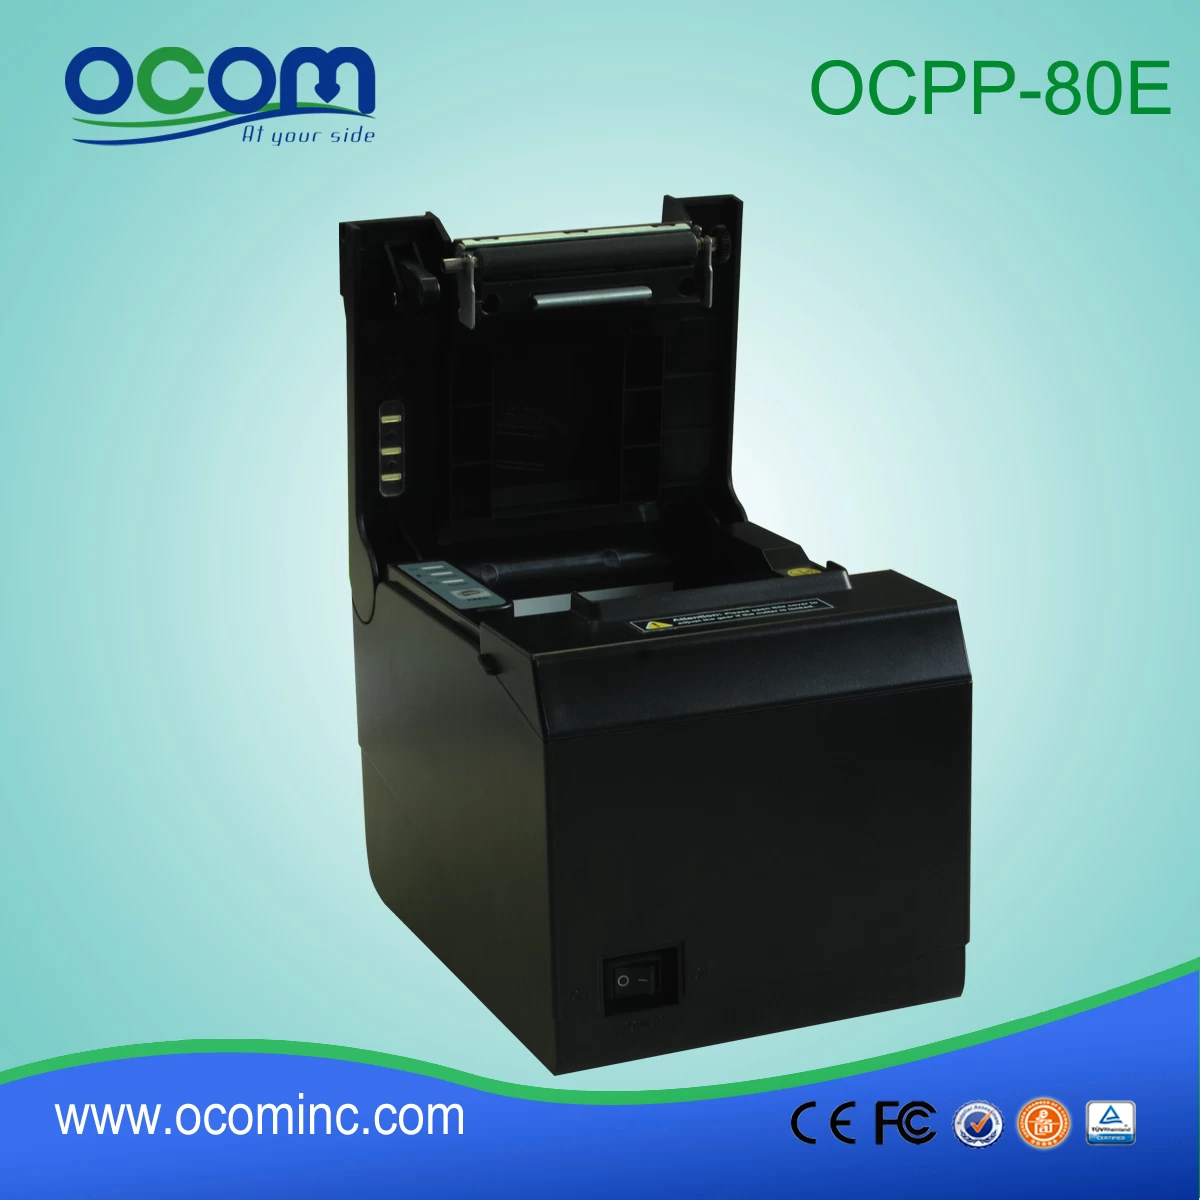 OCPP-80E---China made low price POS receipt printer